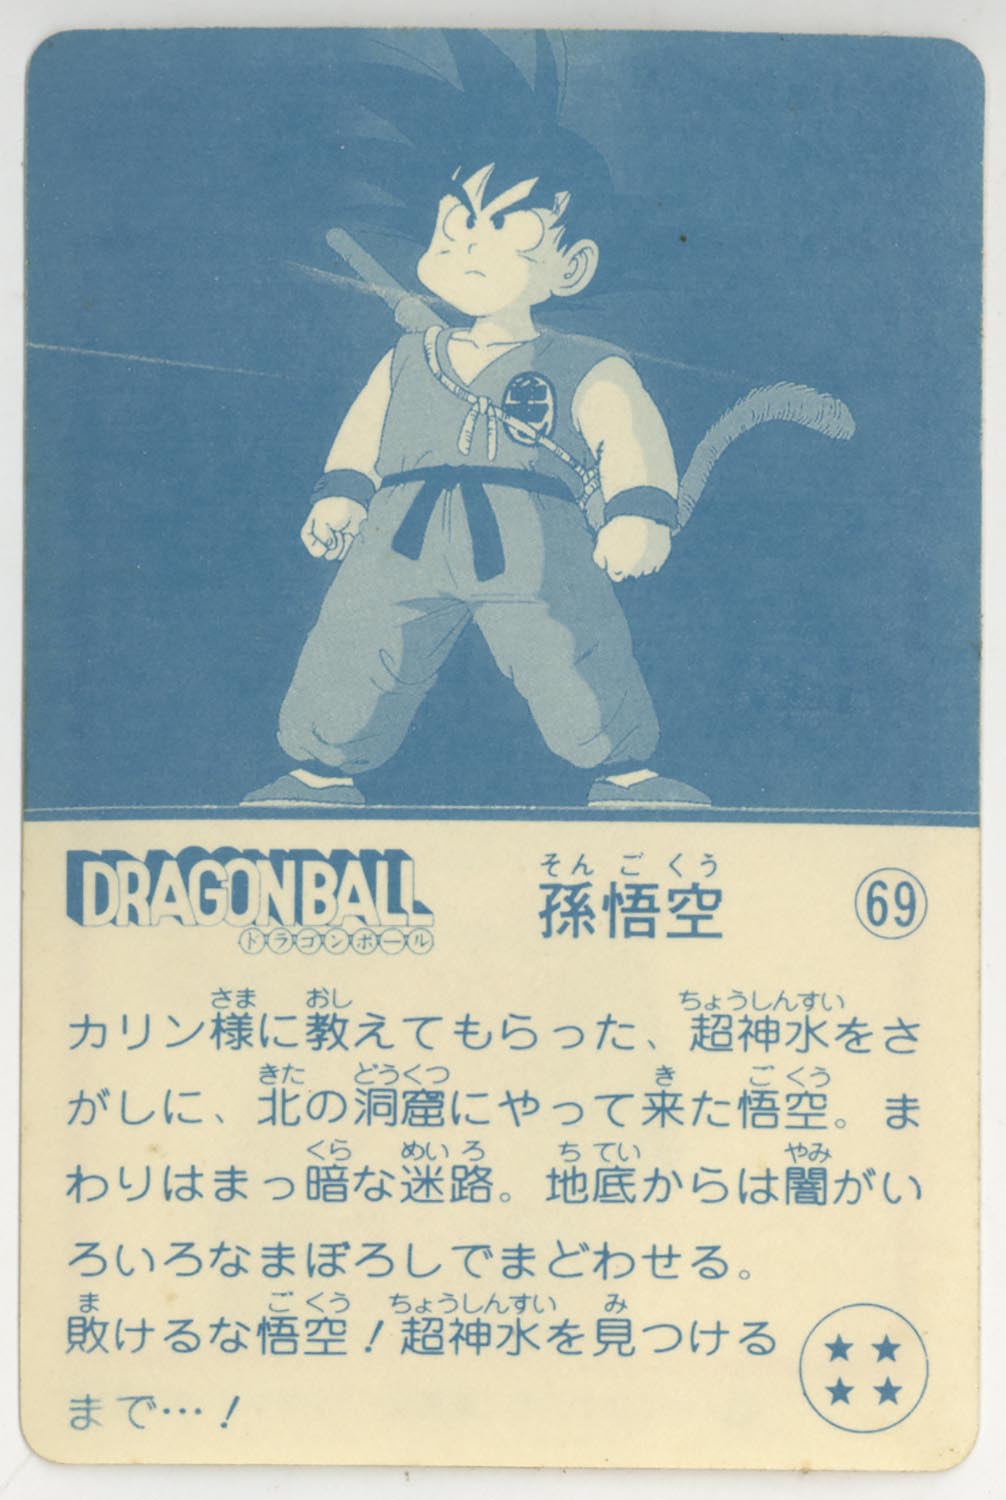 Dragon Ball Tenkaichi Cola Candy Jelly Part 5 Son Goku 69